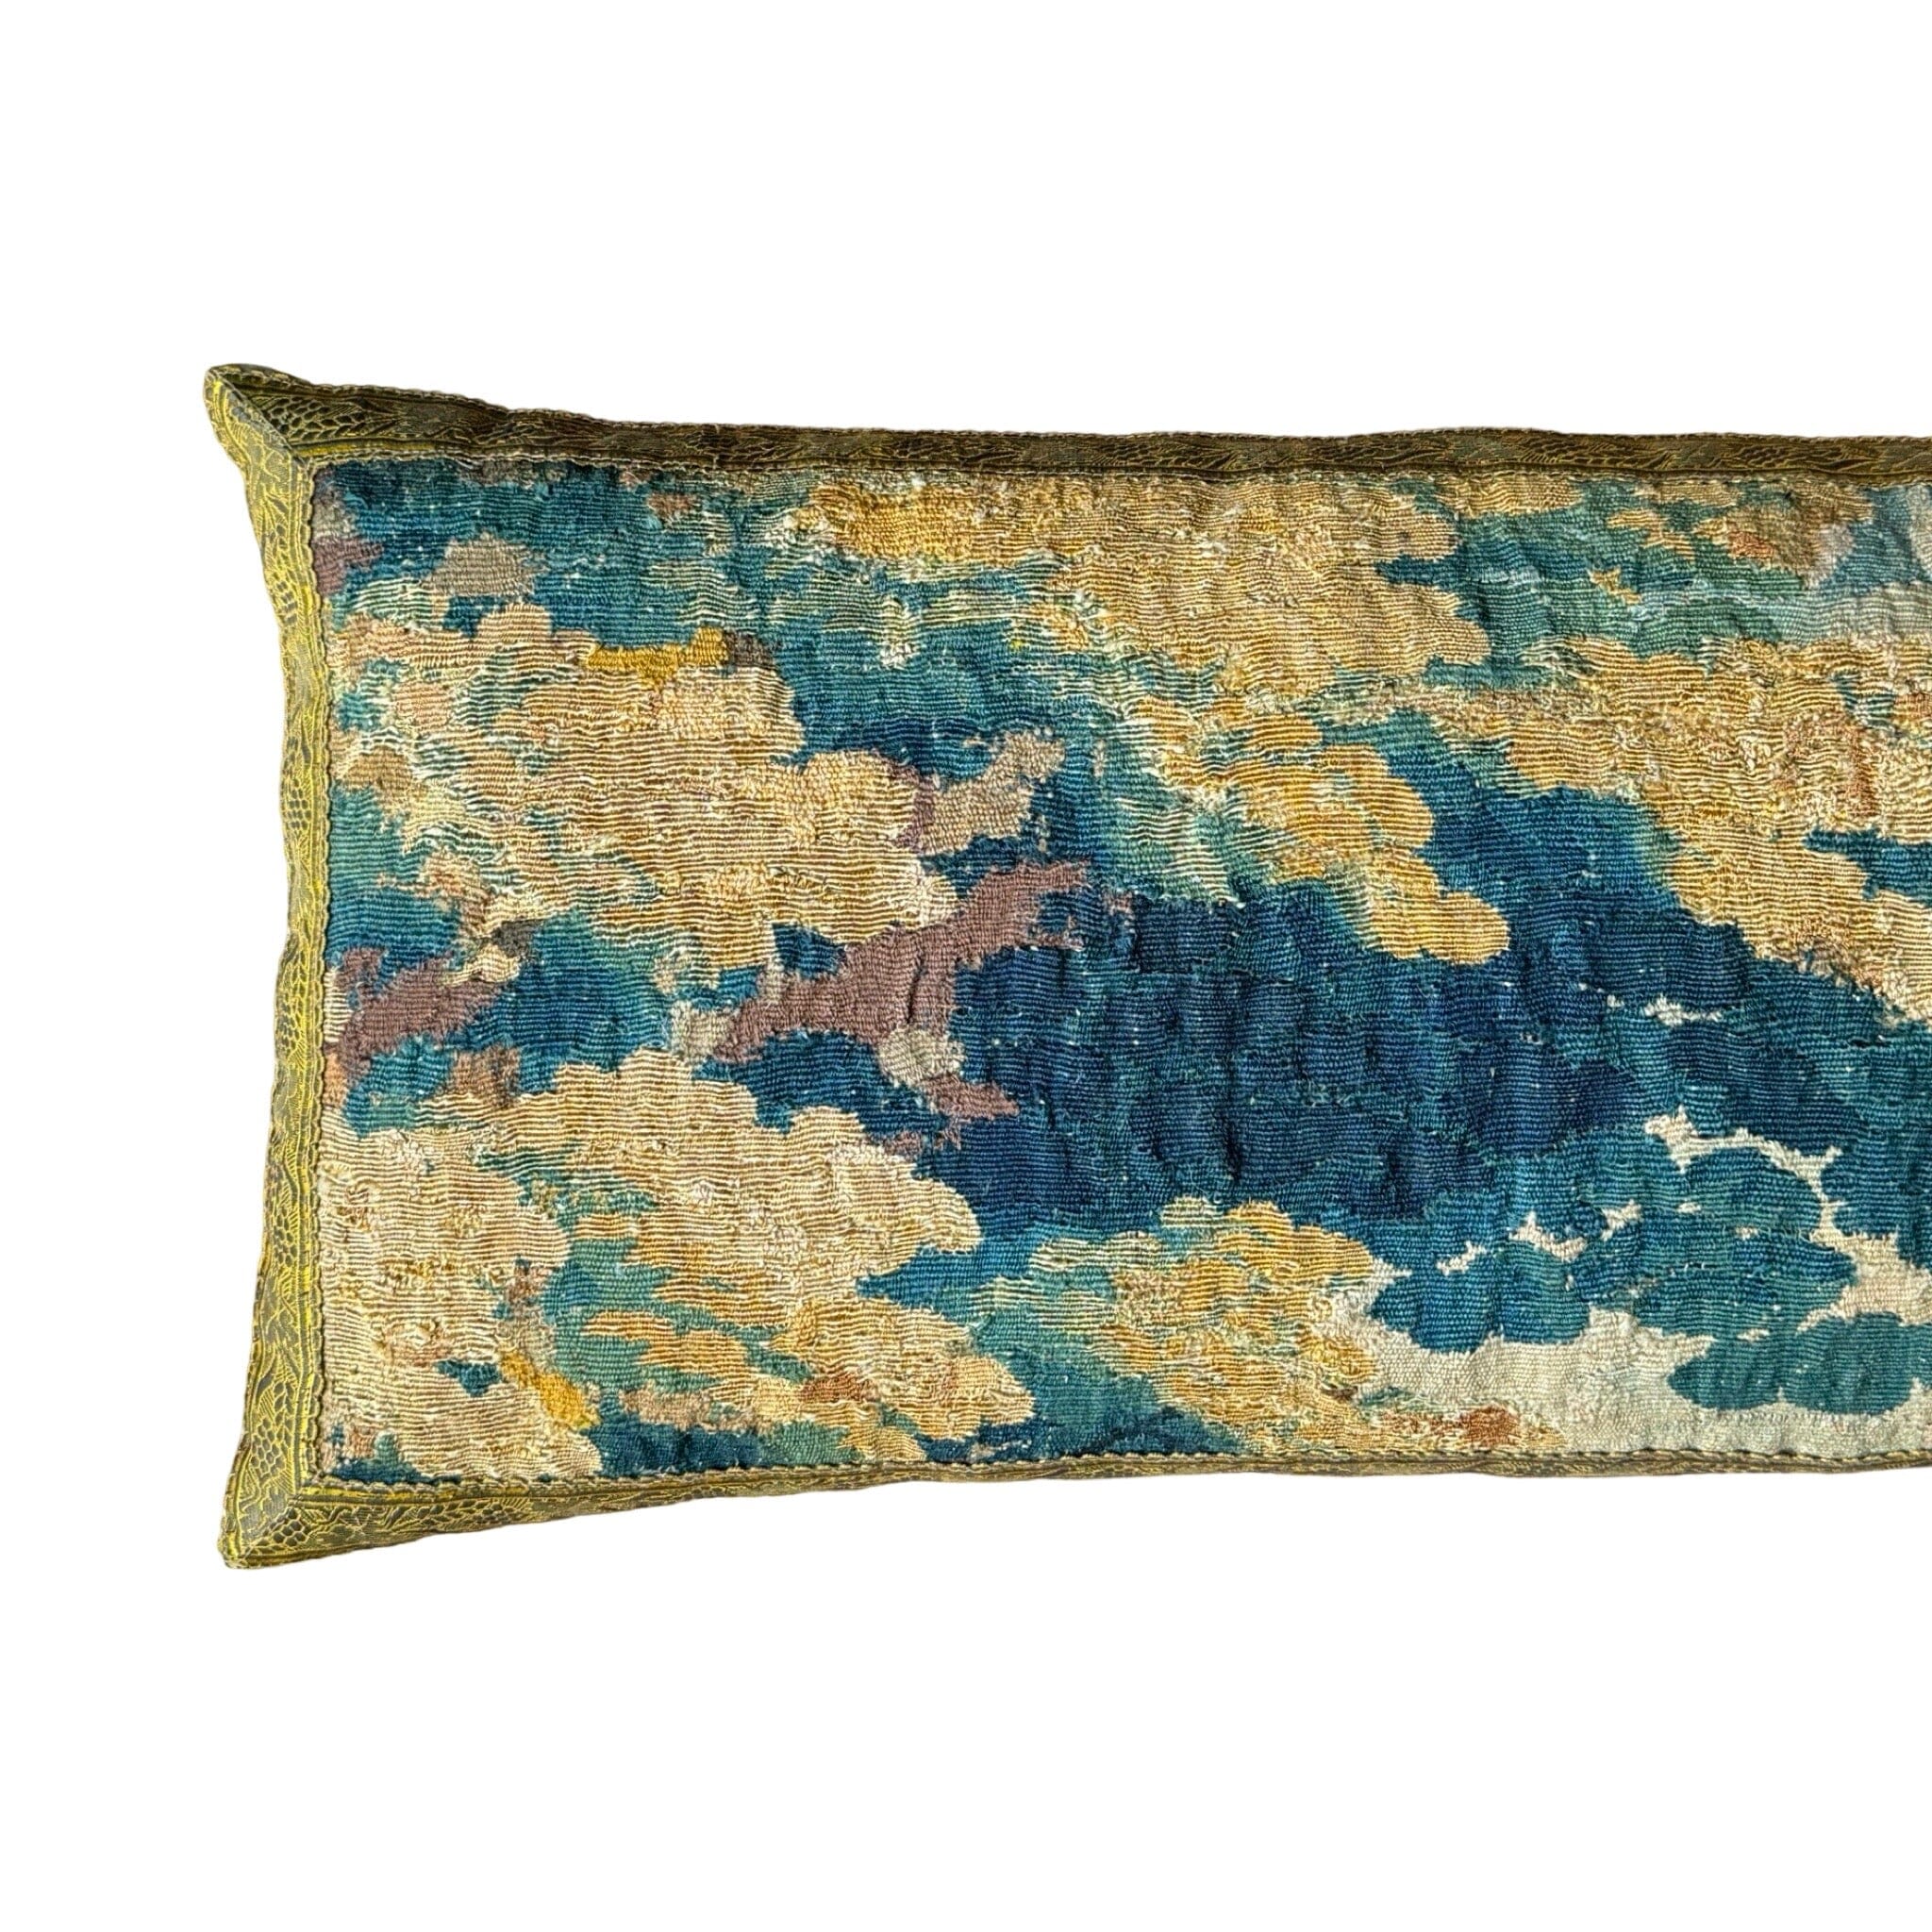 RESERVED: 17th C. Tapestry Fragment (T200424 | 15 x 32") New Pillows B. Viz Design 